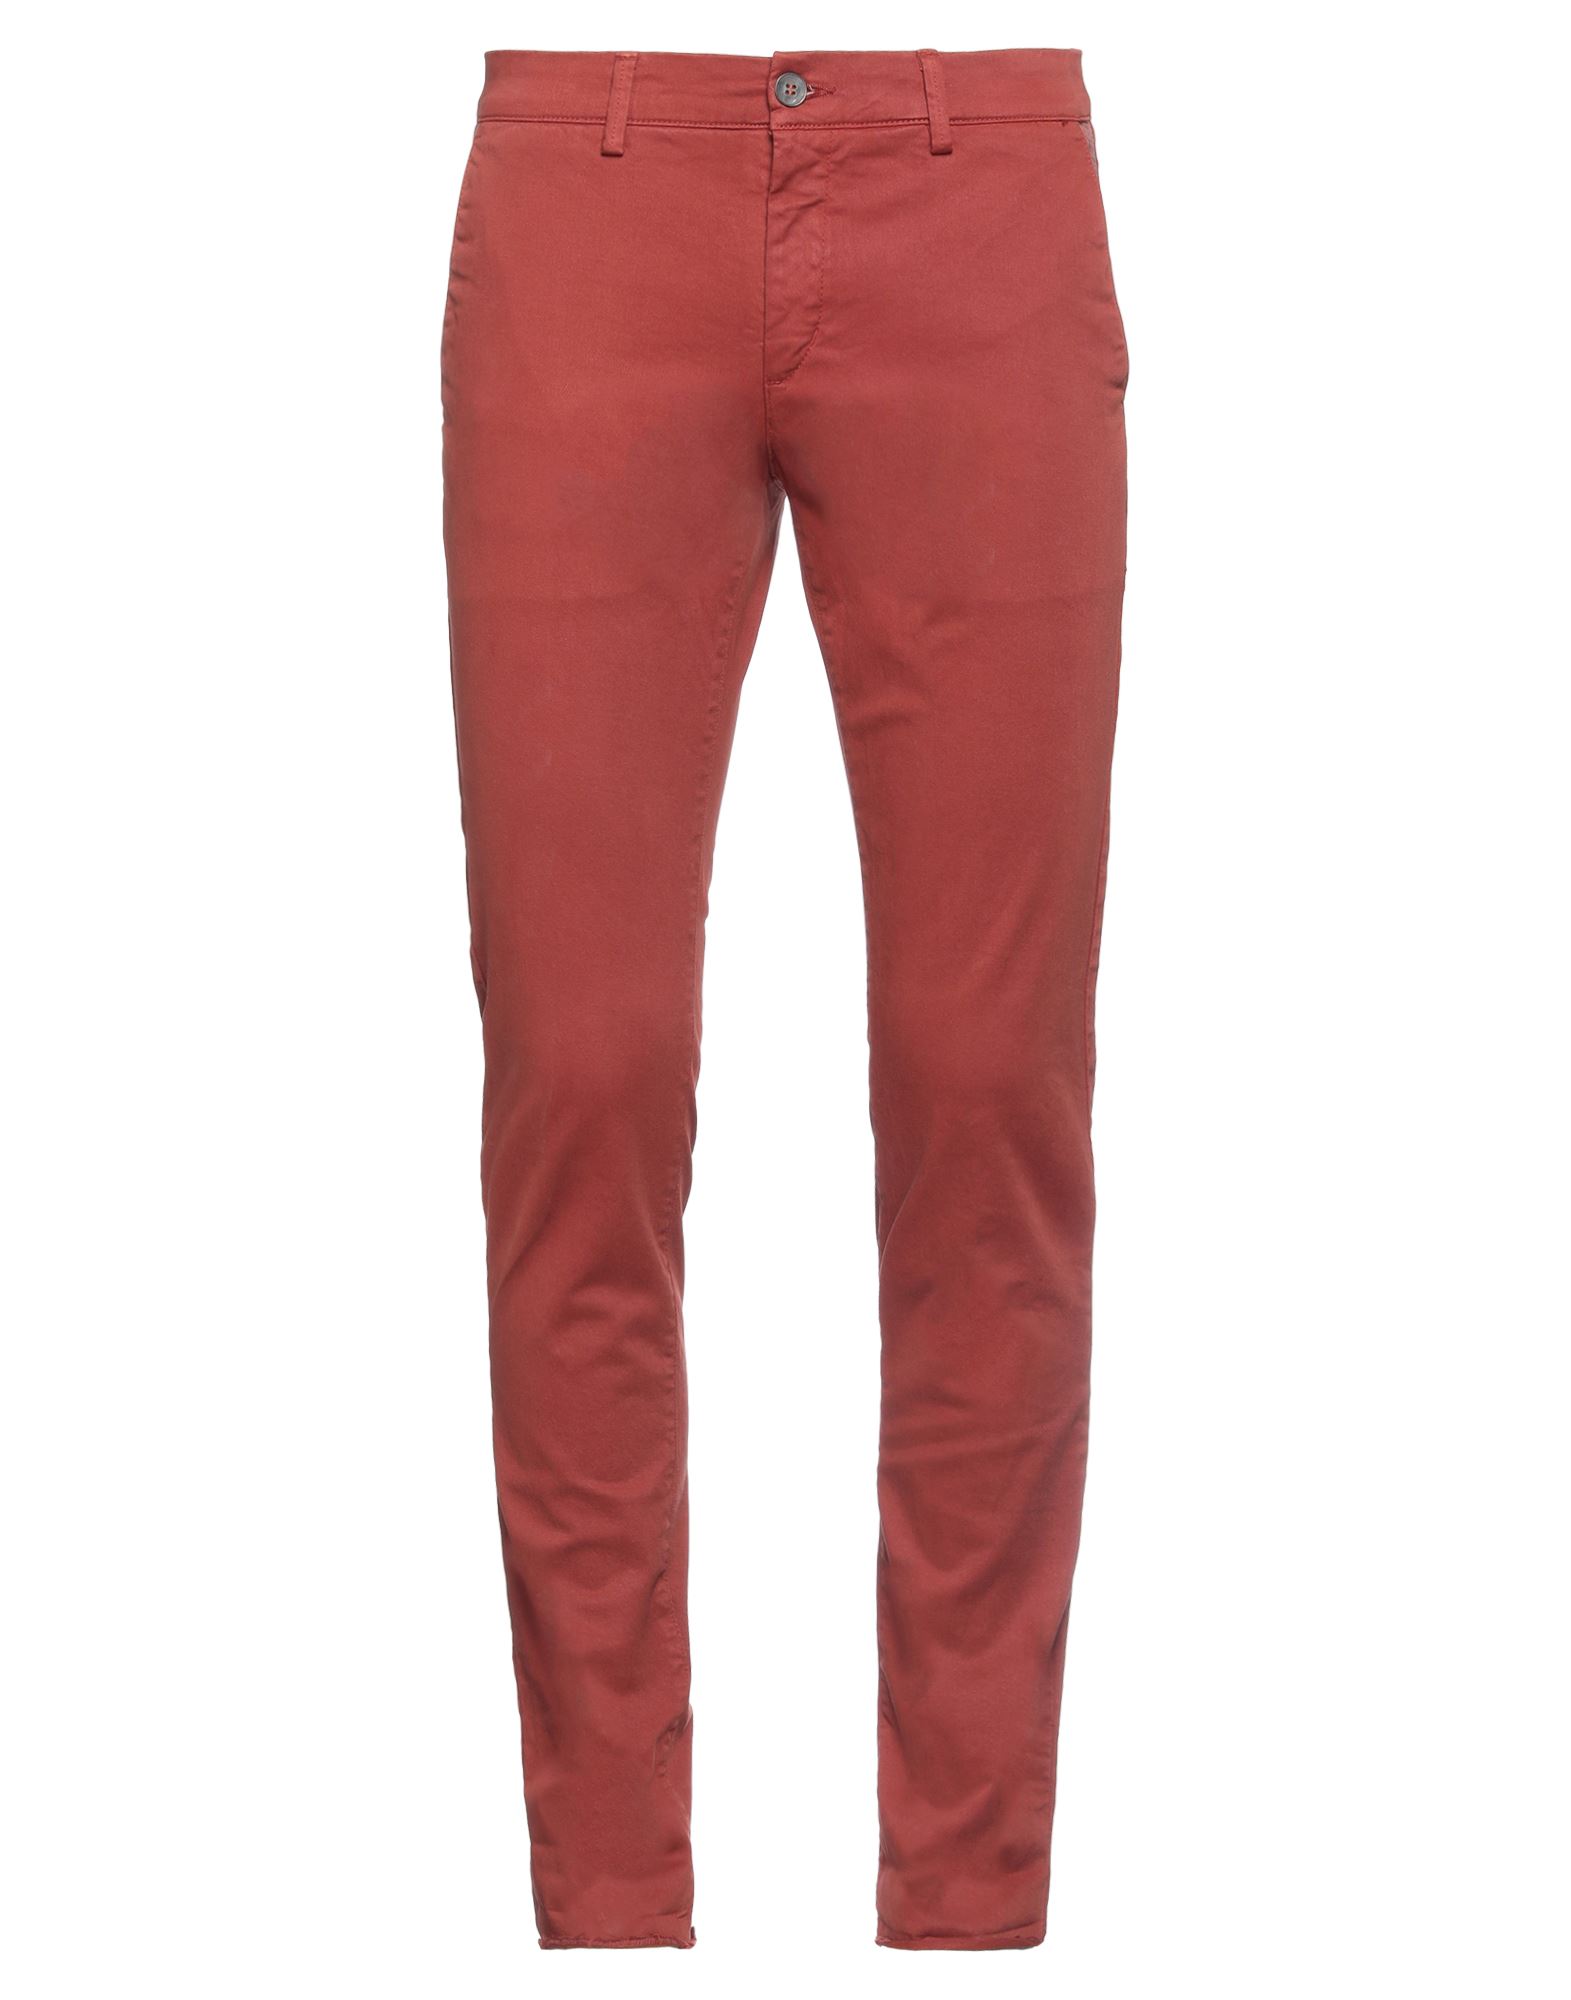 Shop Maison Clochard Man Pants Brick Red Size 32 Cotton, Elastane